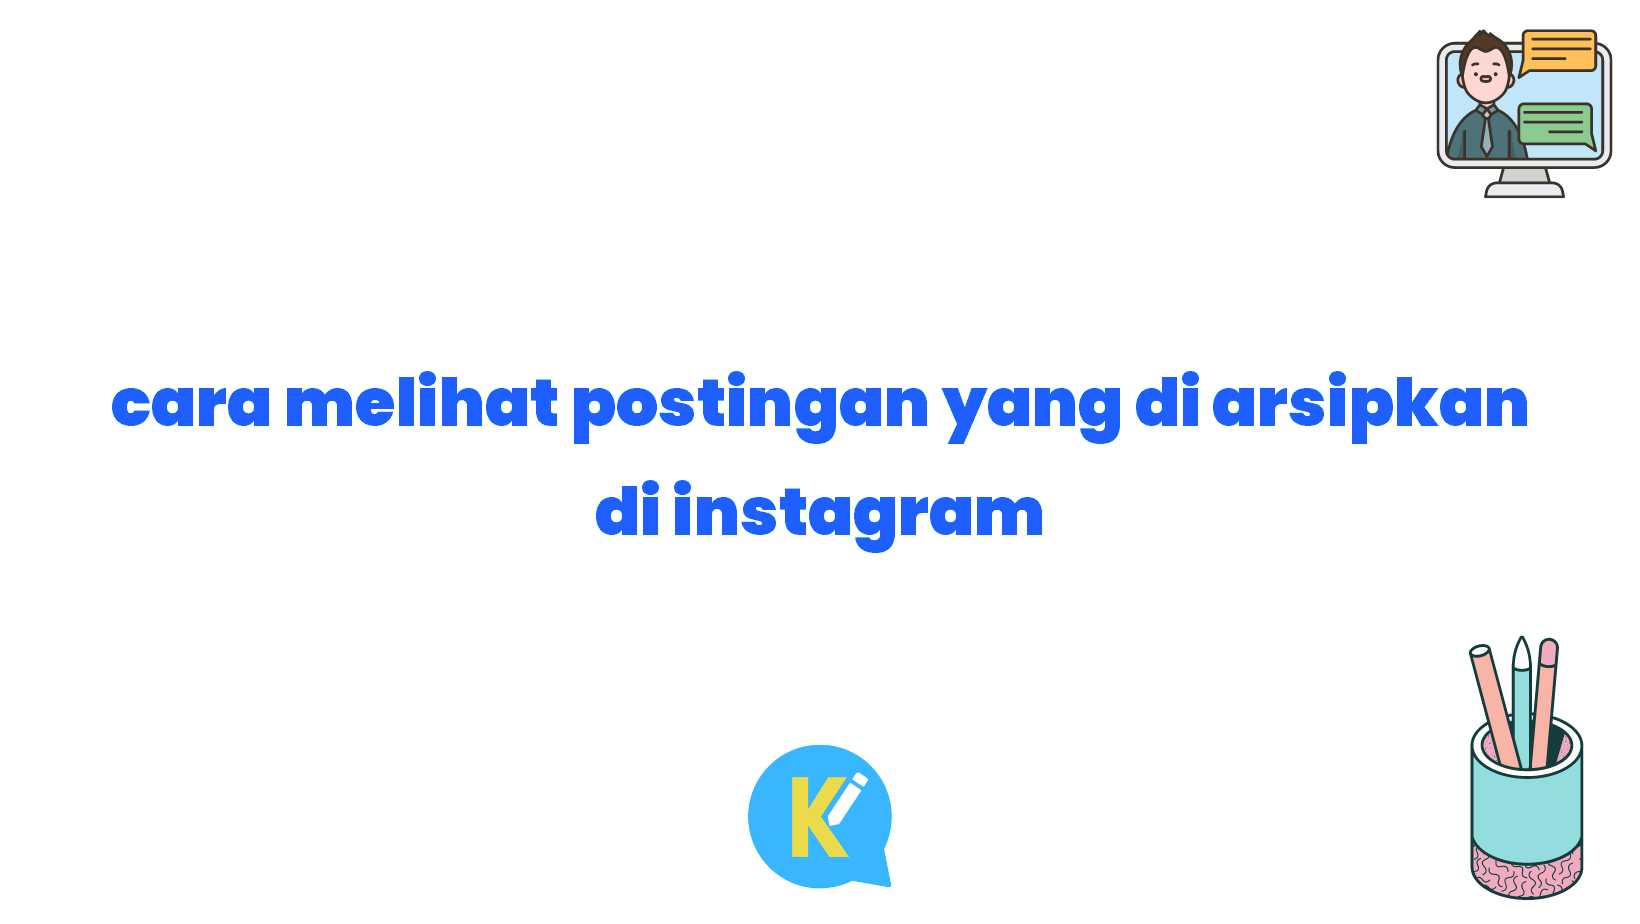 cara melihat postingan yang di arsipkan di instagram